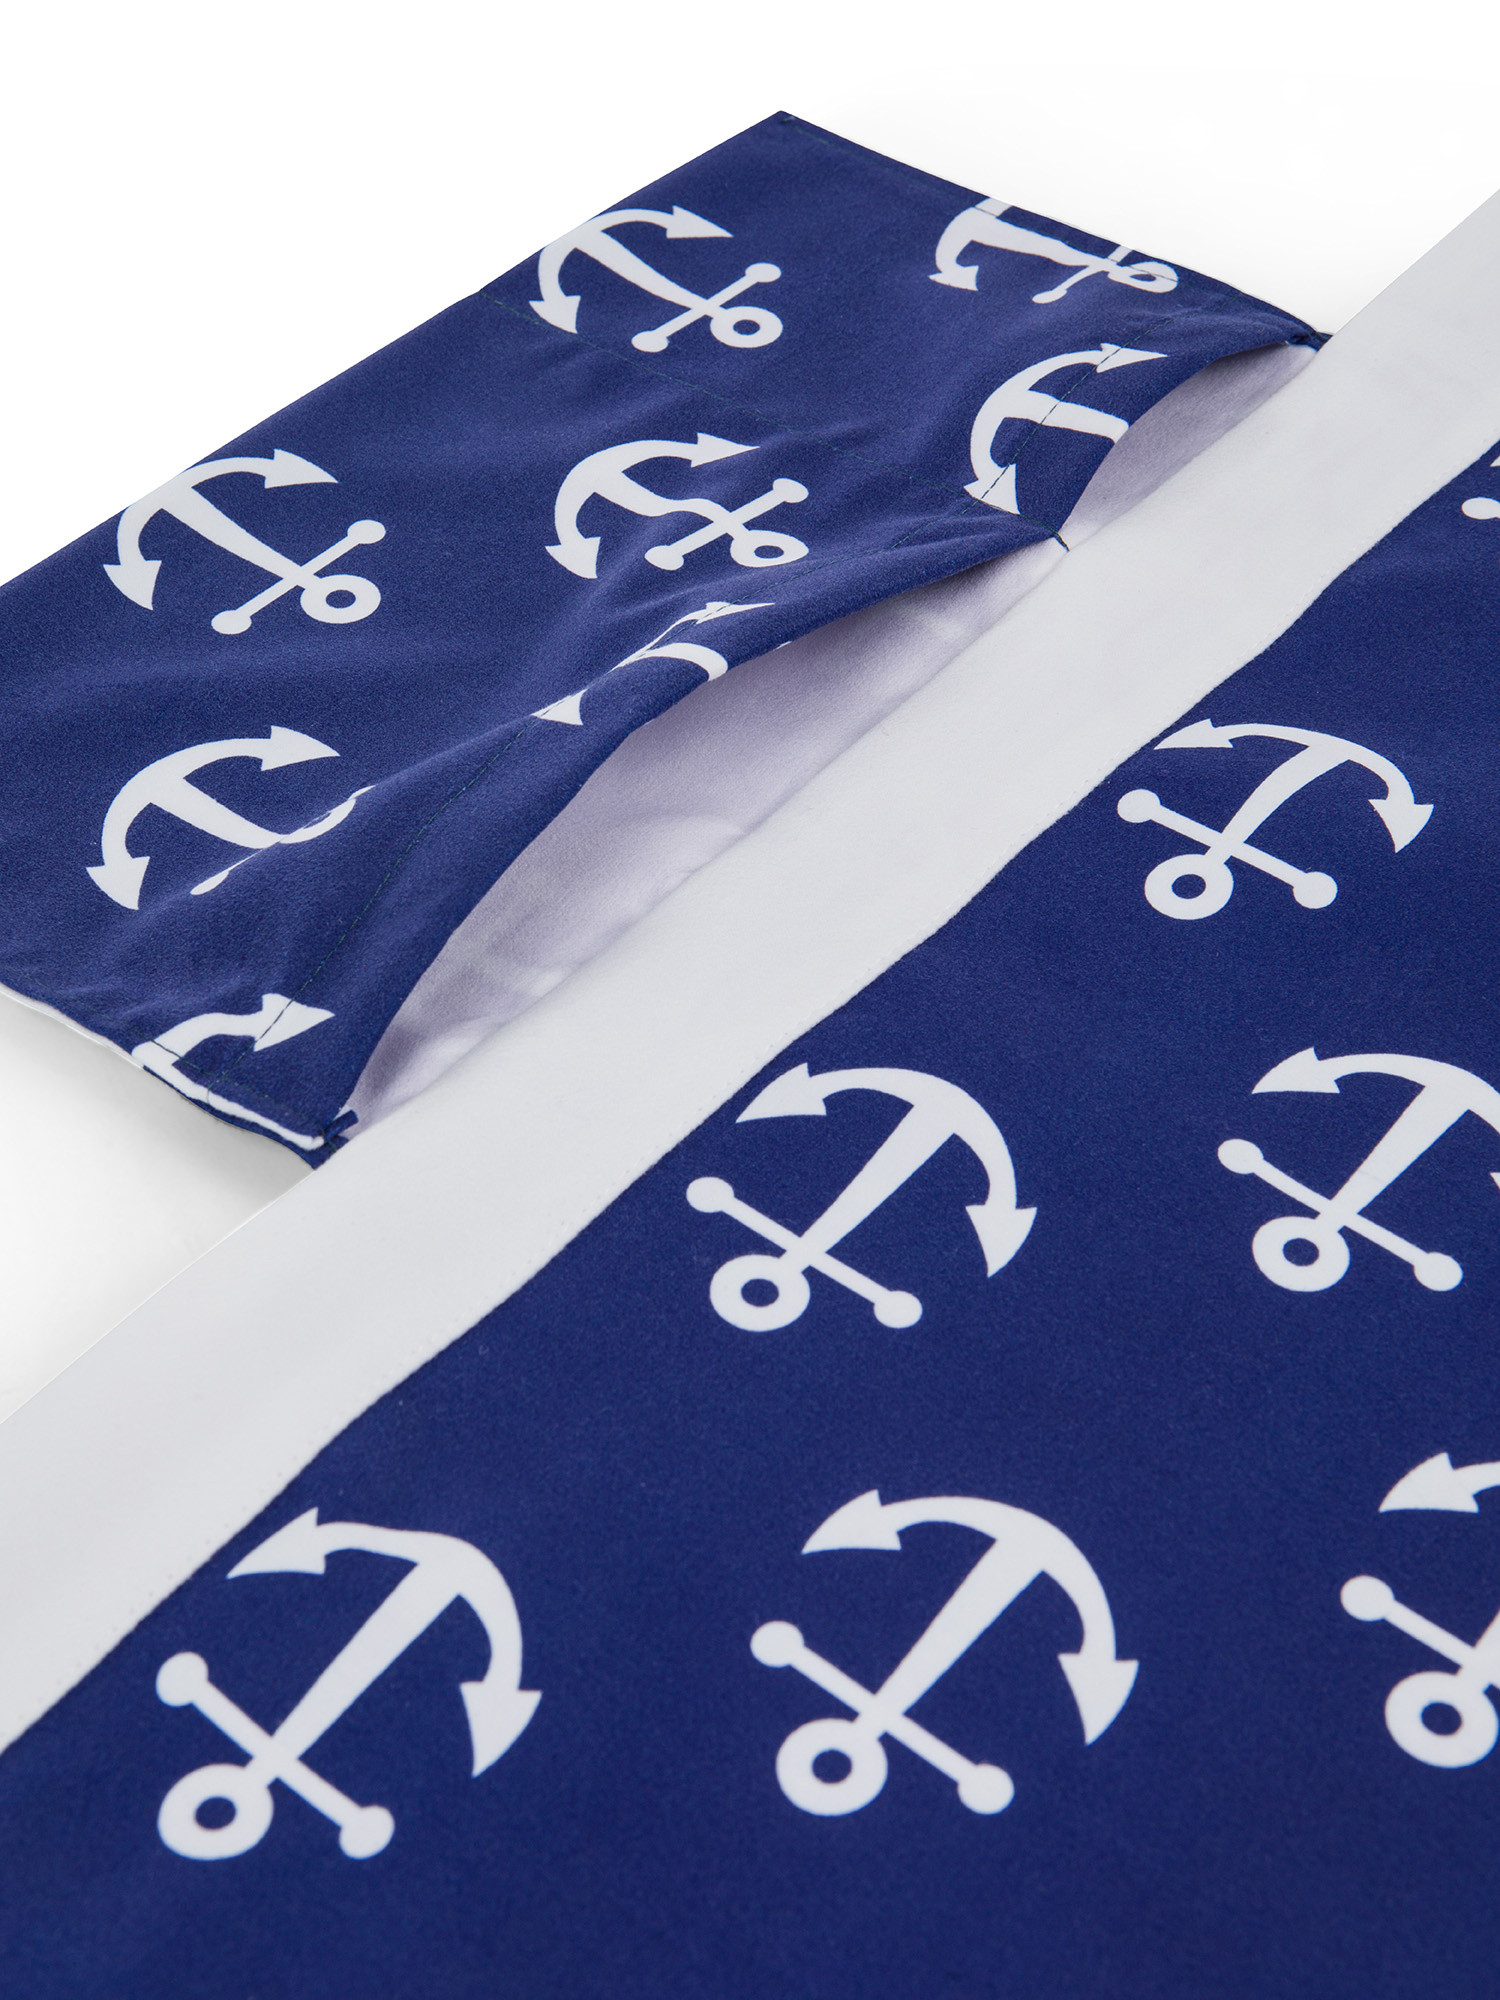 Anchor motif microfiber bed sheet, Blue, large image number 1